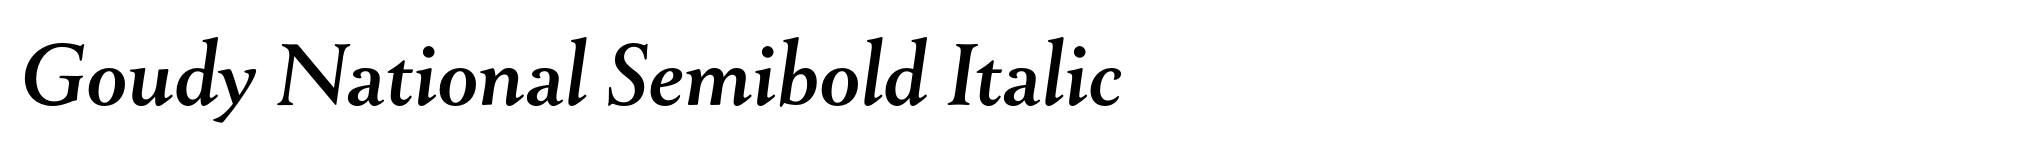 Goudy National Semibold Italic image